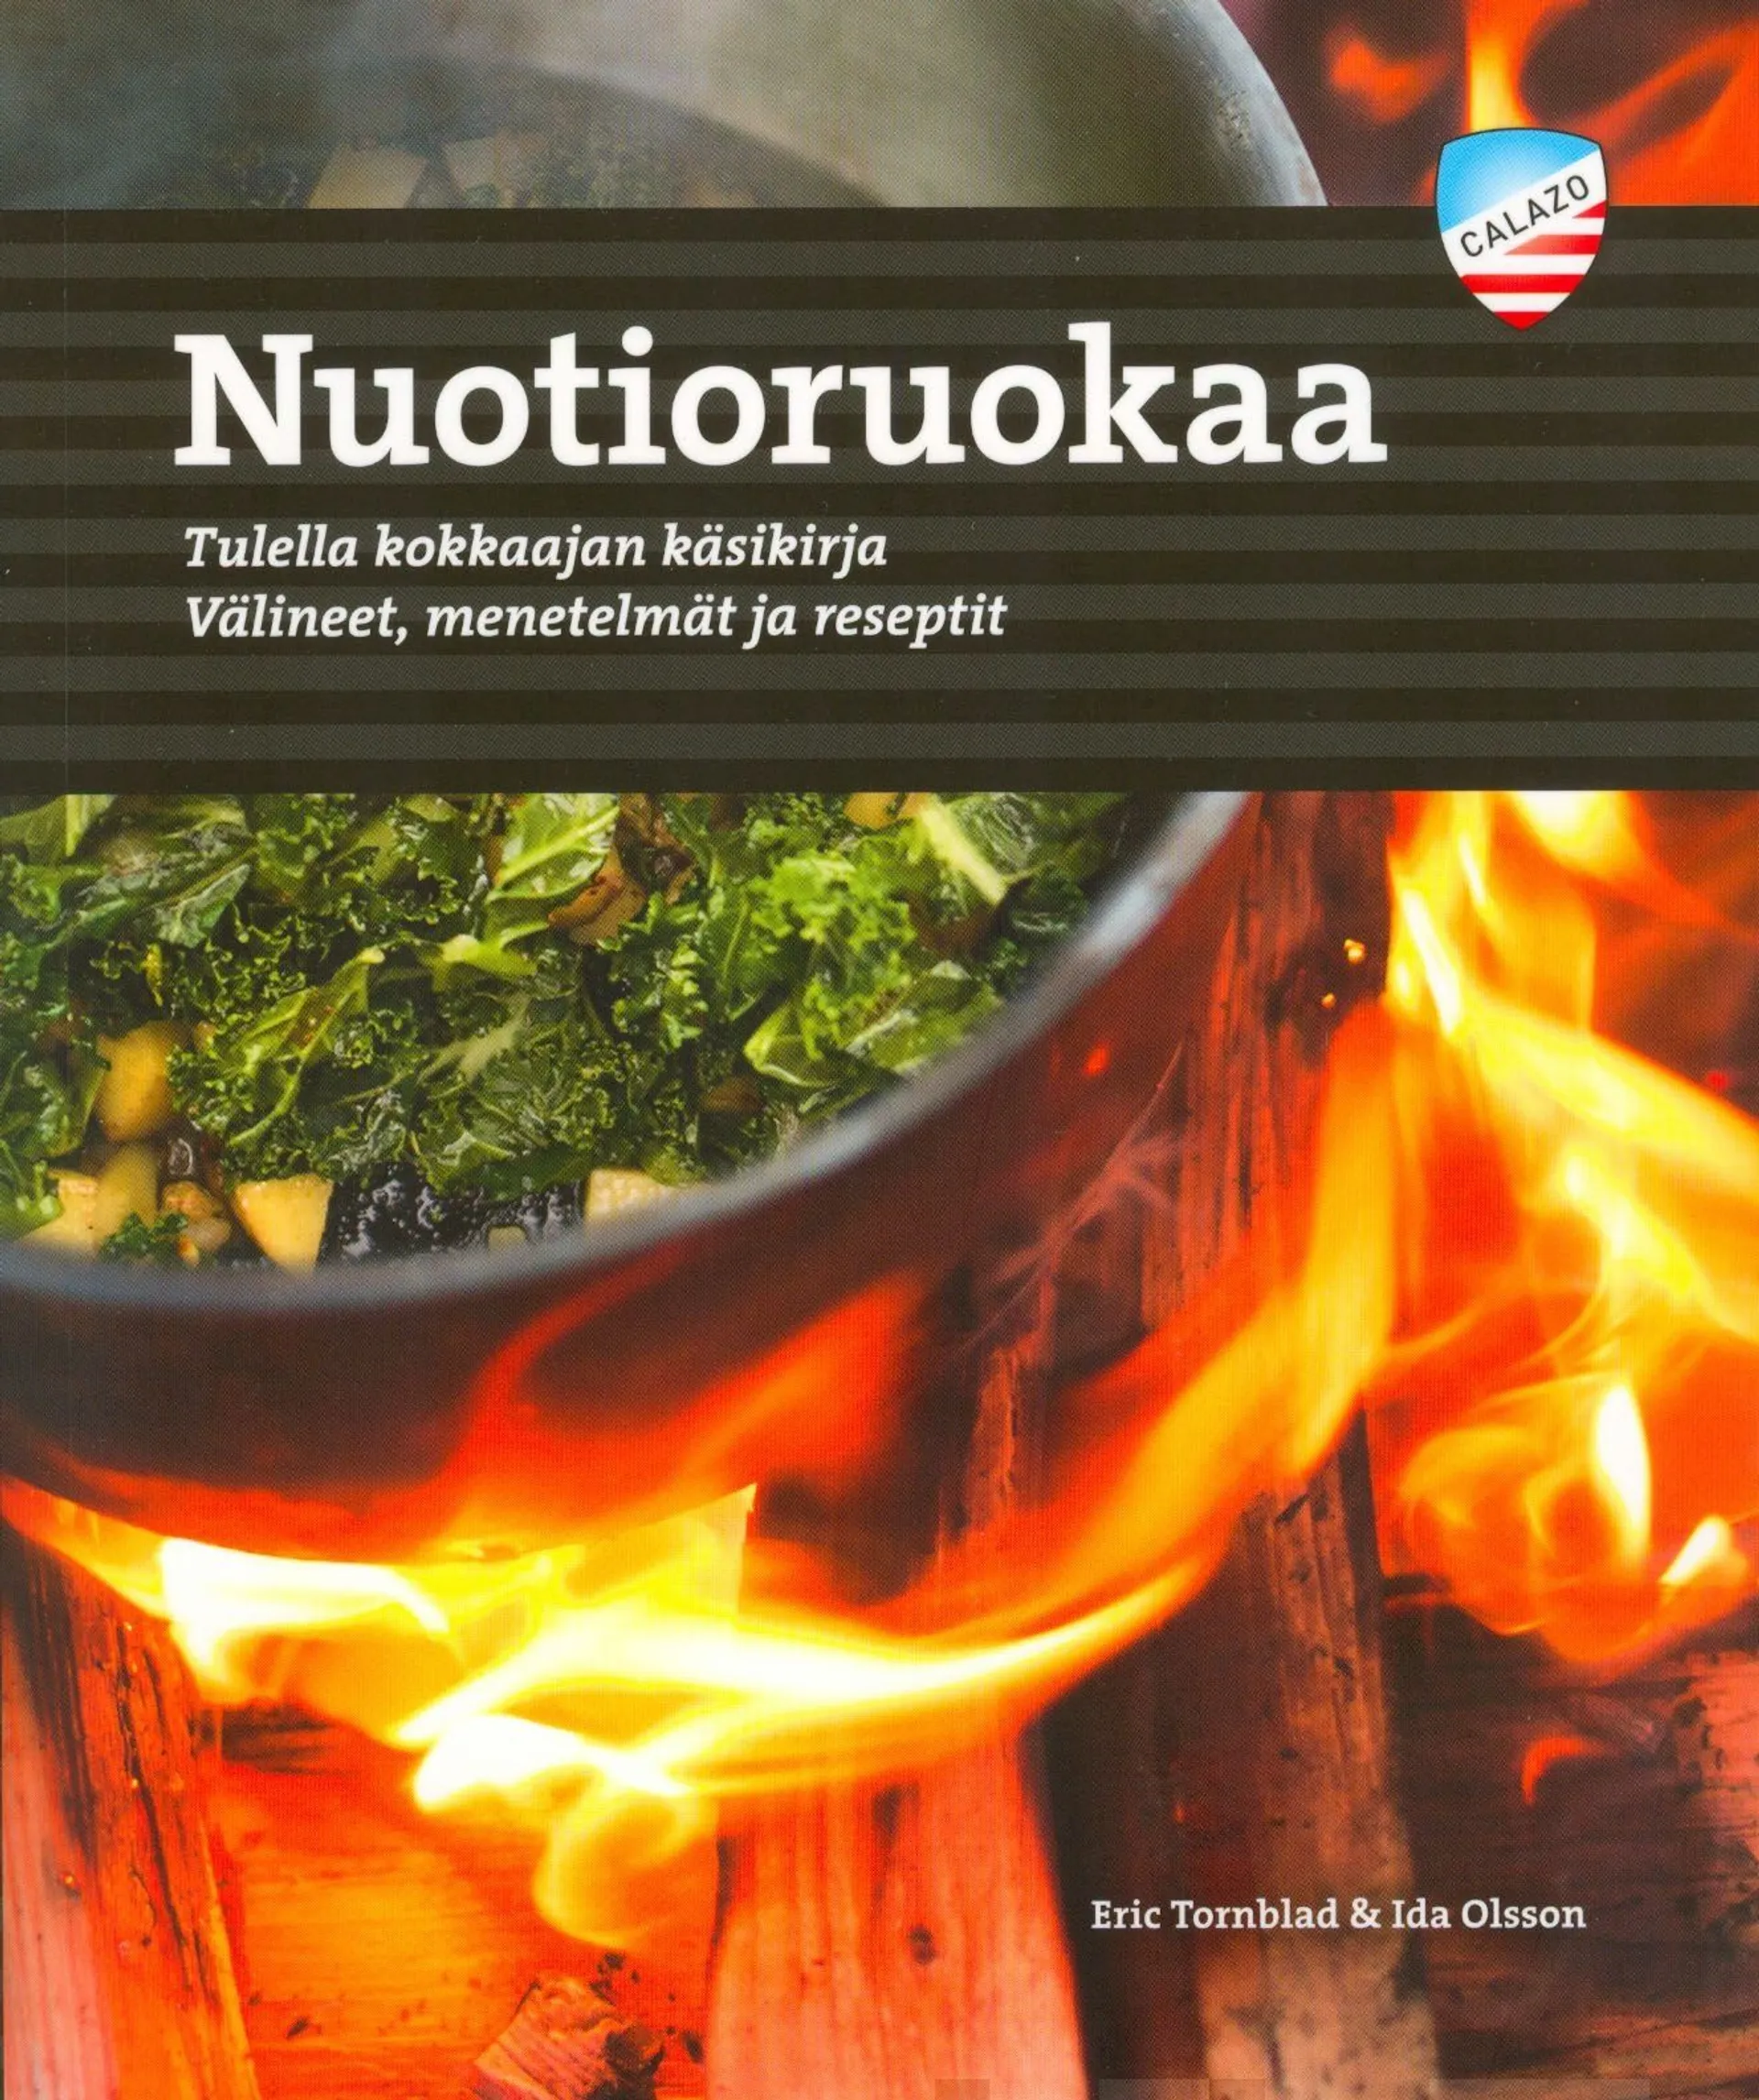 Tornblad, Nuotioruokaa - Tulella kokkaajan käsikirja - välineet, meenetelmät ja reseptit